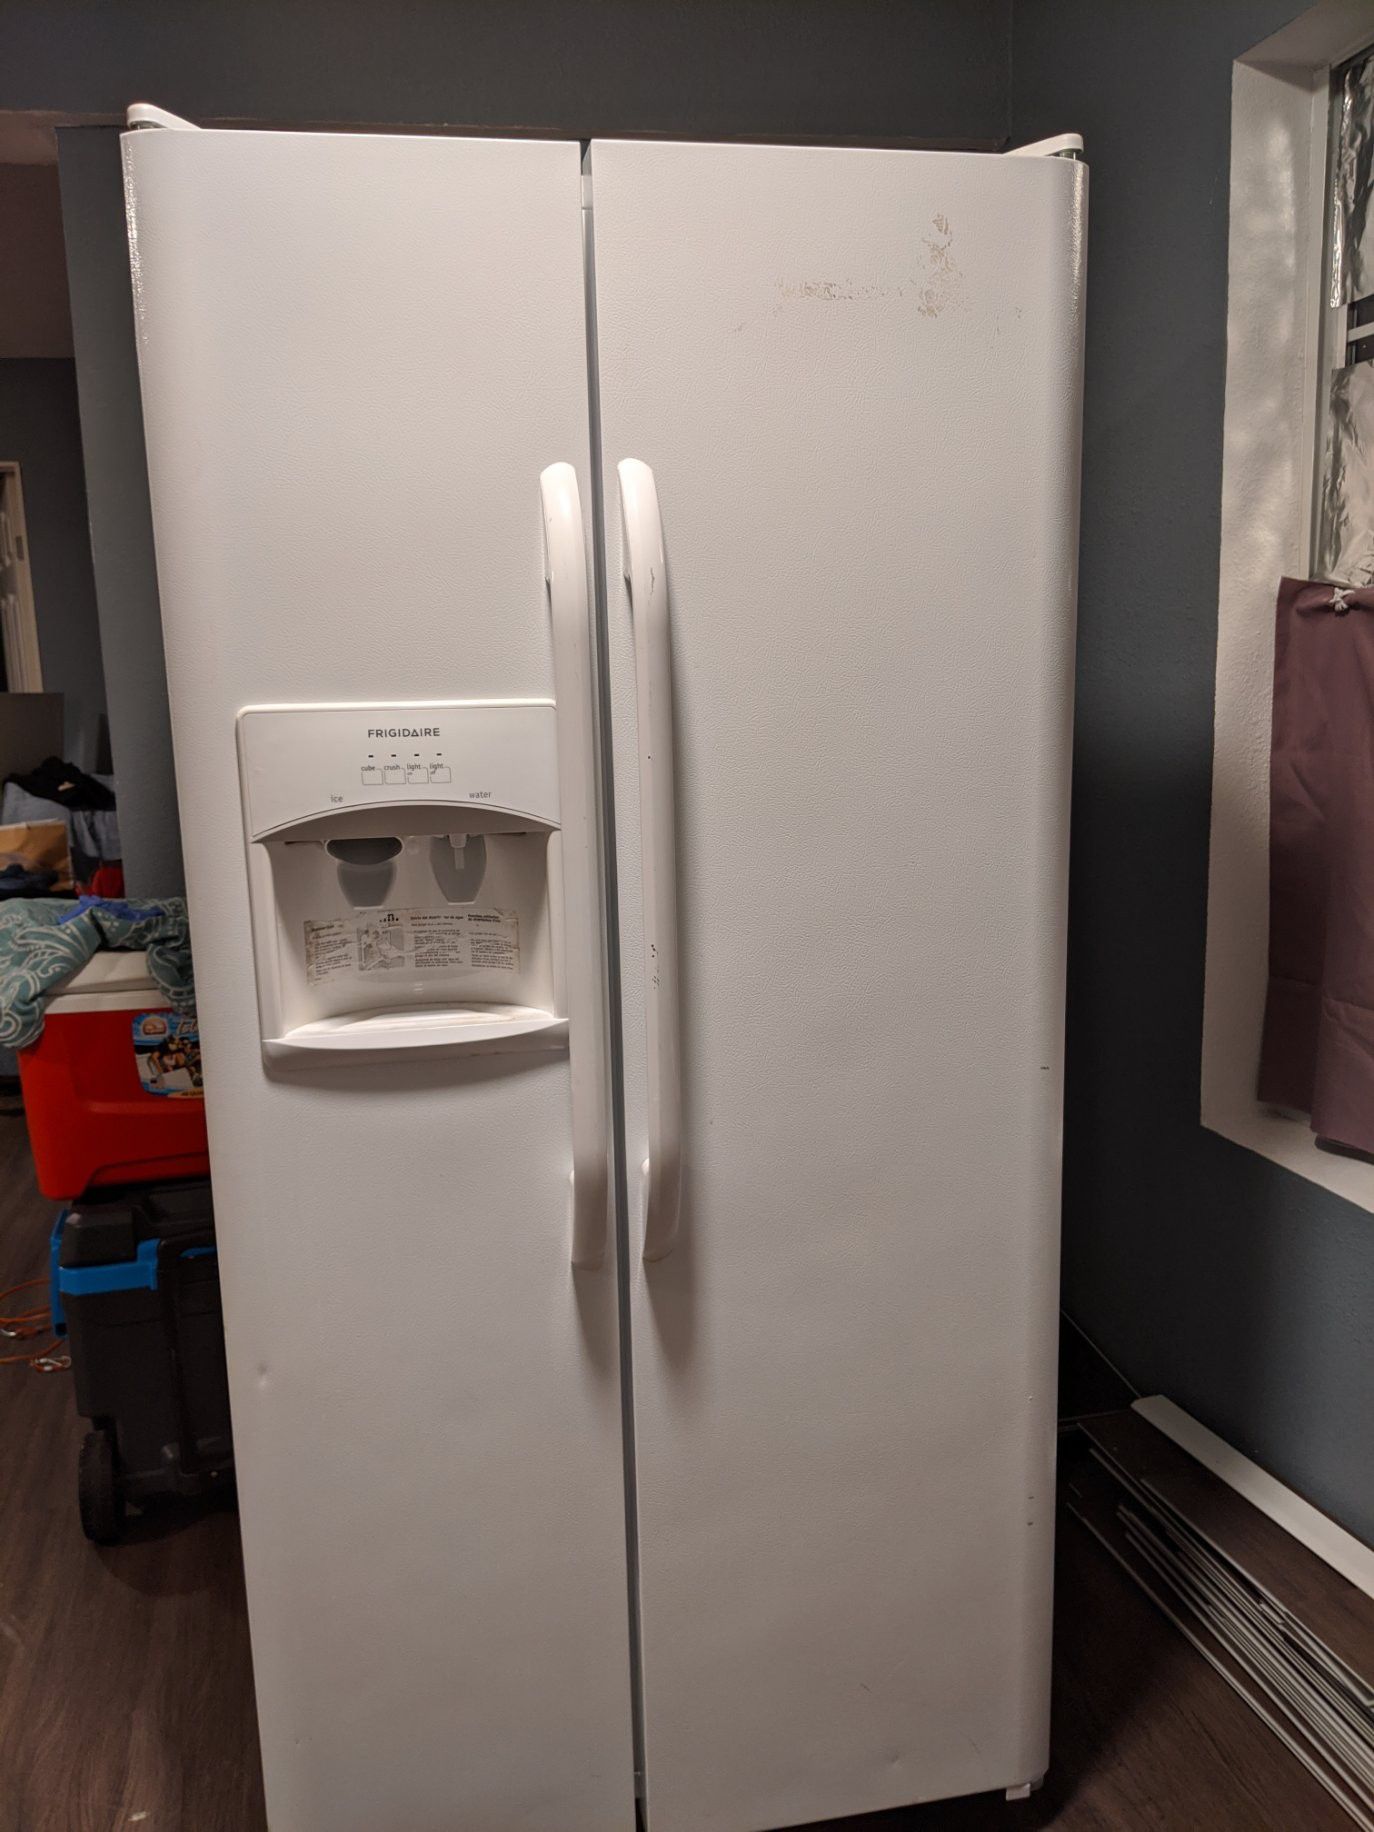 Frigidaire double door refrigerator